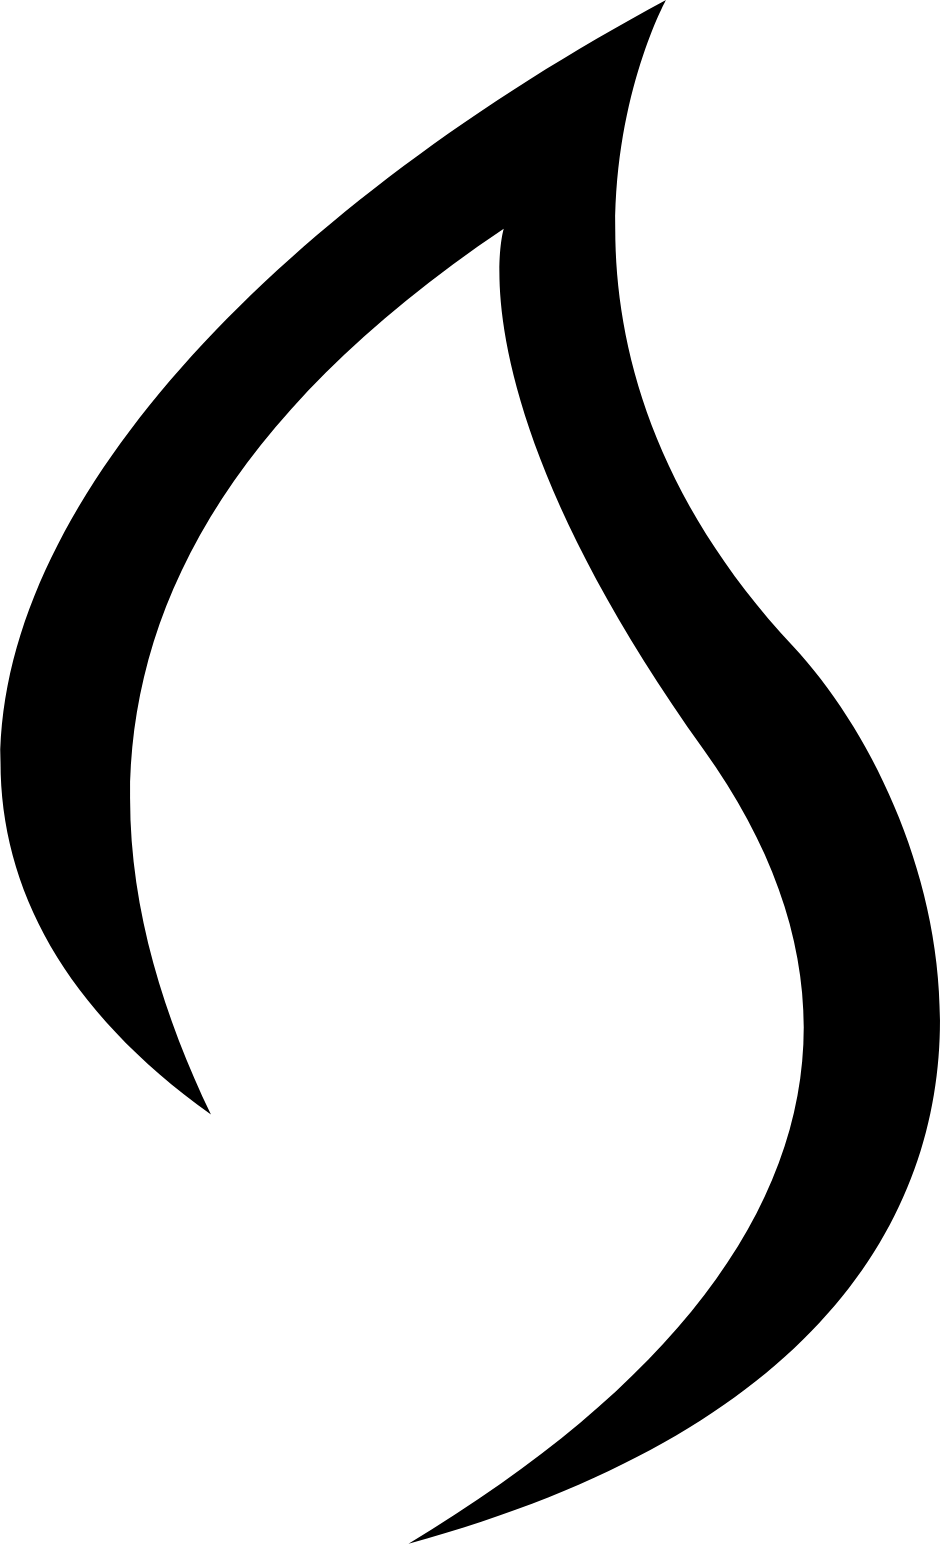 HomeBiogas logo (transparent PNG)